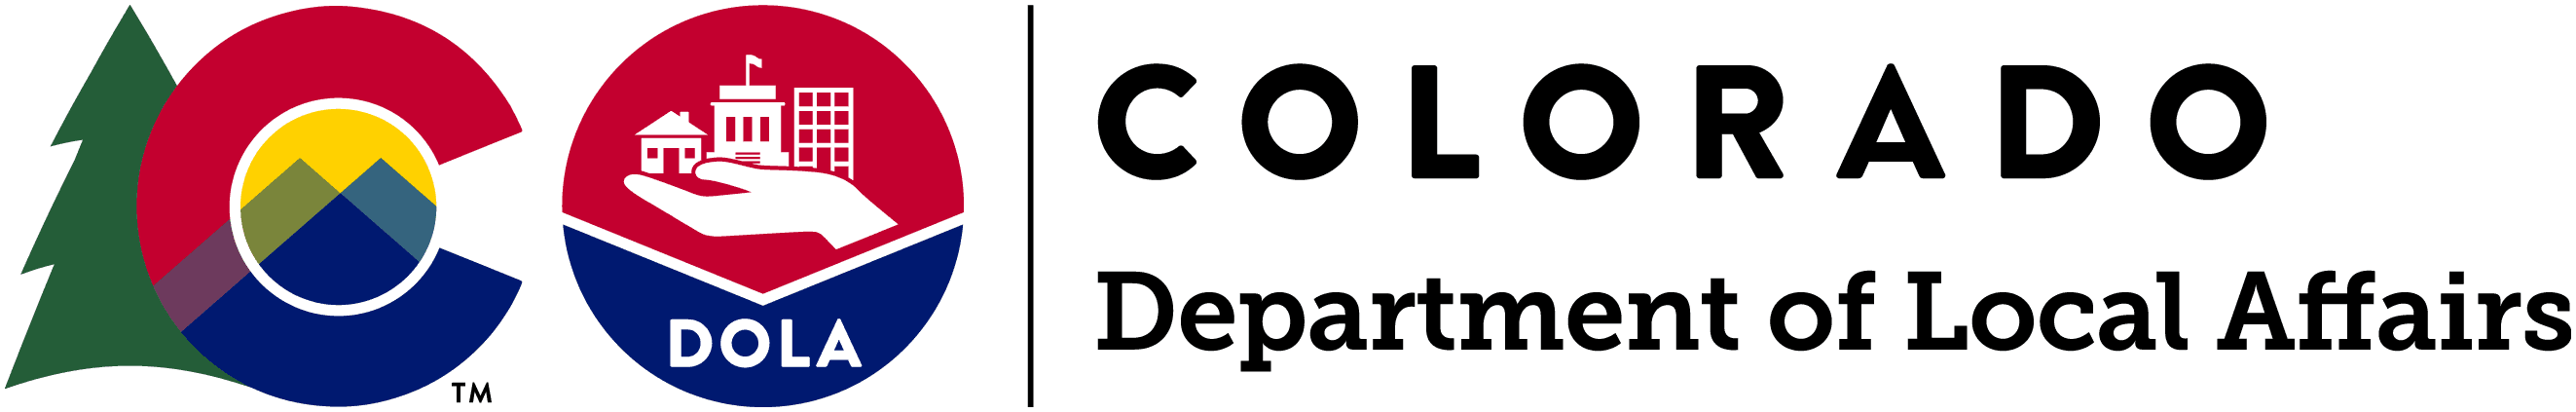 Colorado Department of Local Affairs